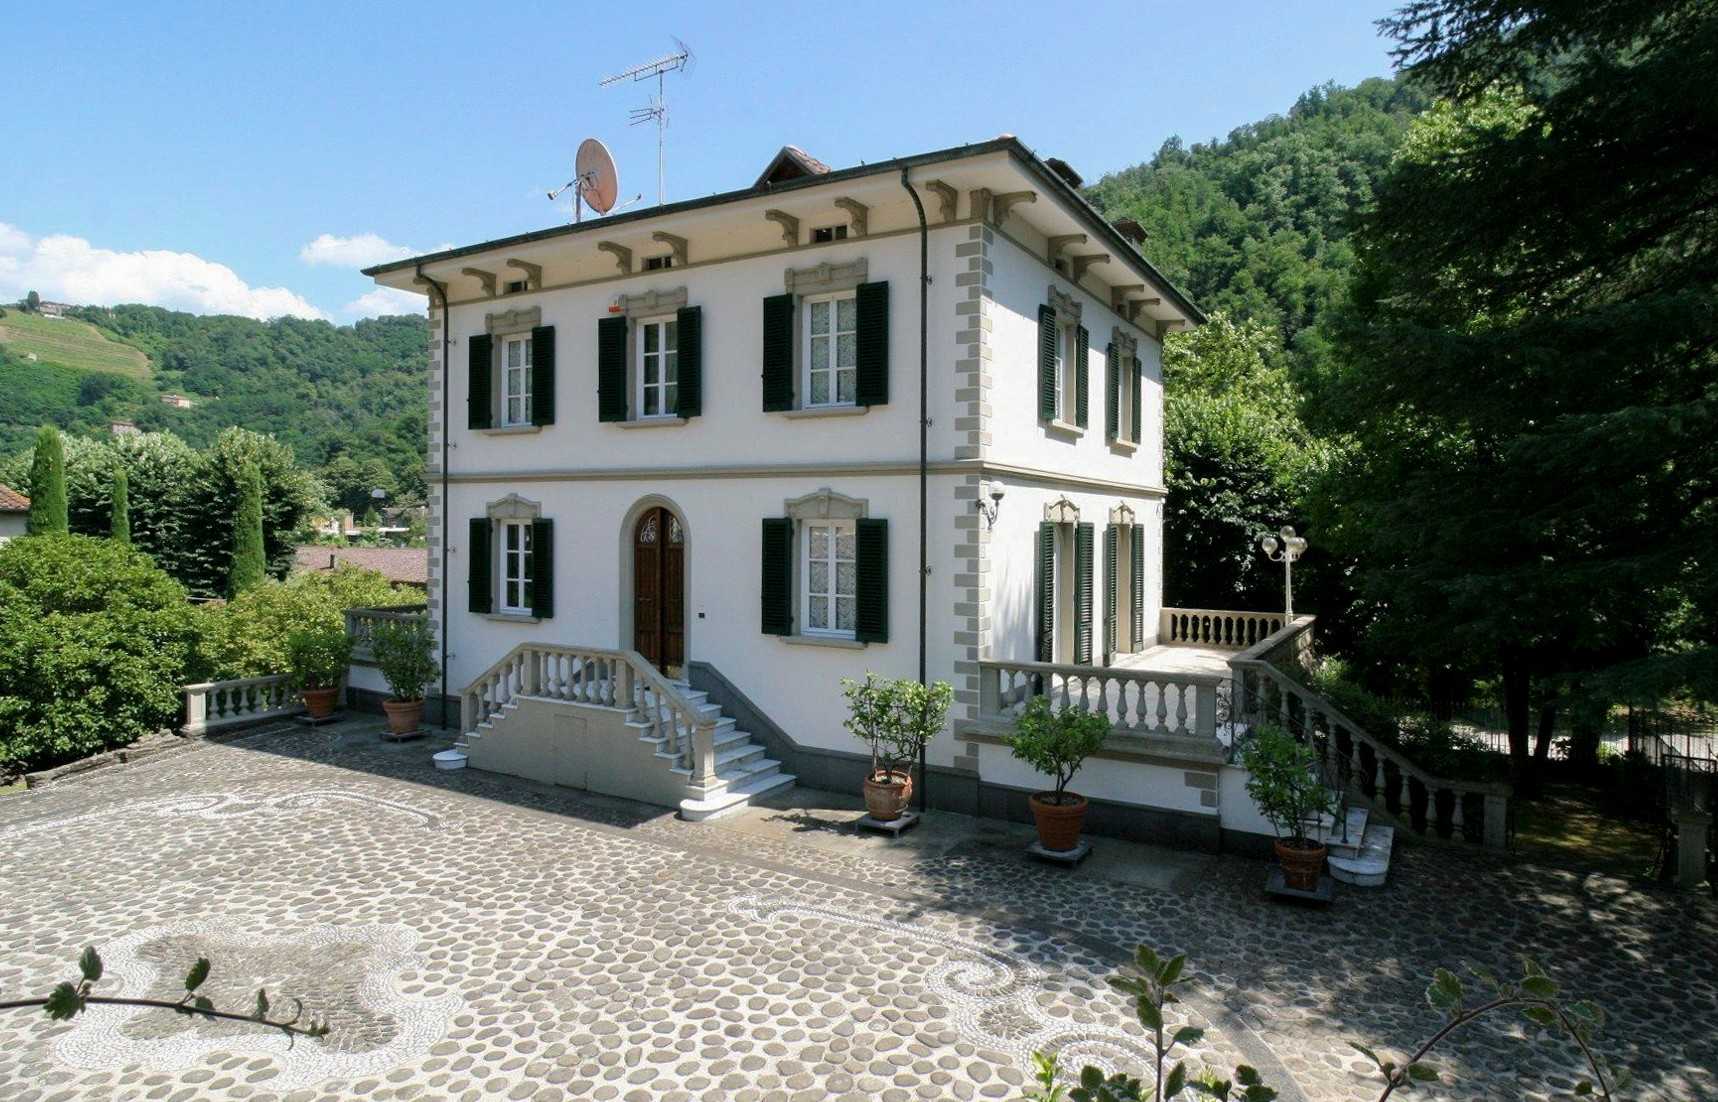 Billeder Luksuriøs toscansk ejendom i Bagni di Lucca med herregård, bondehus og park